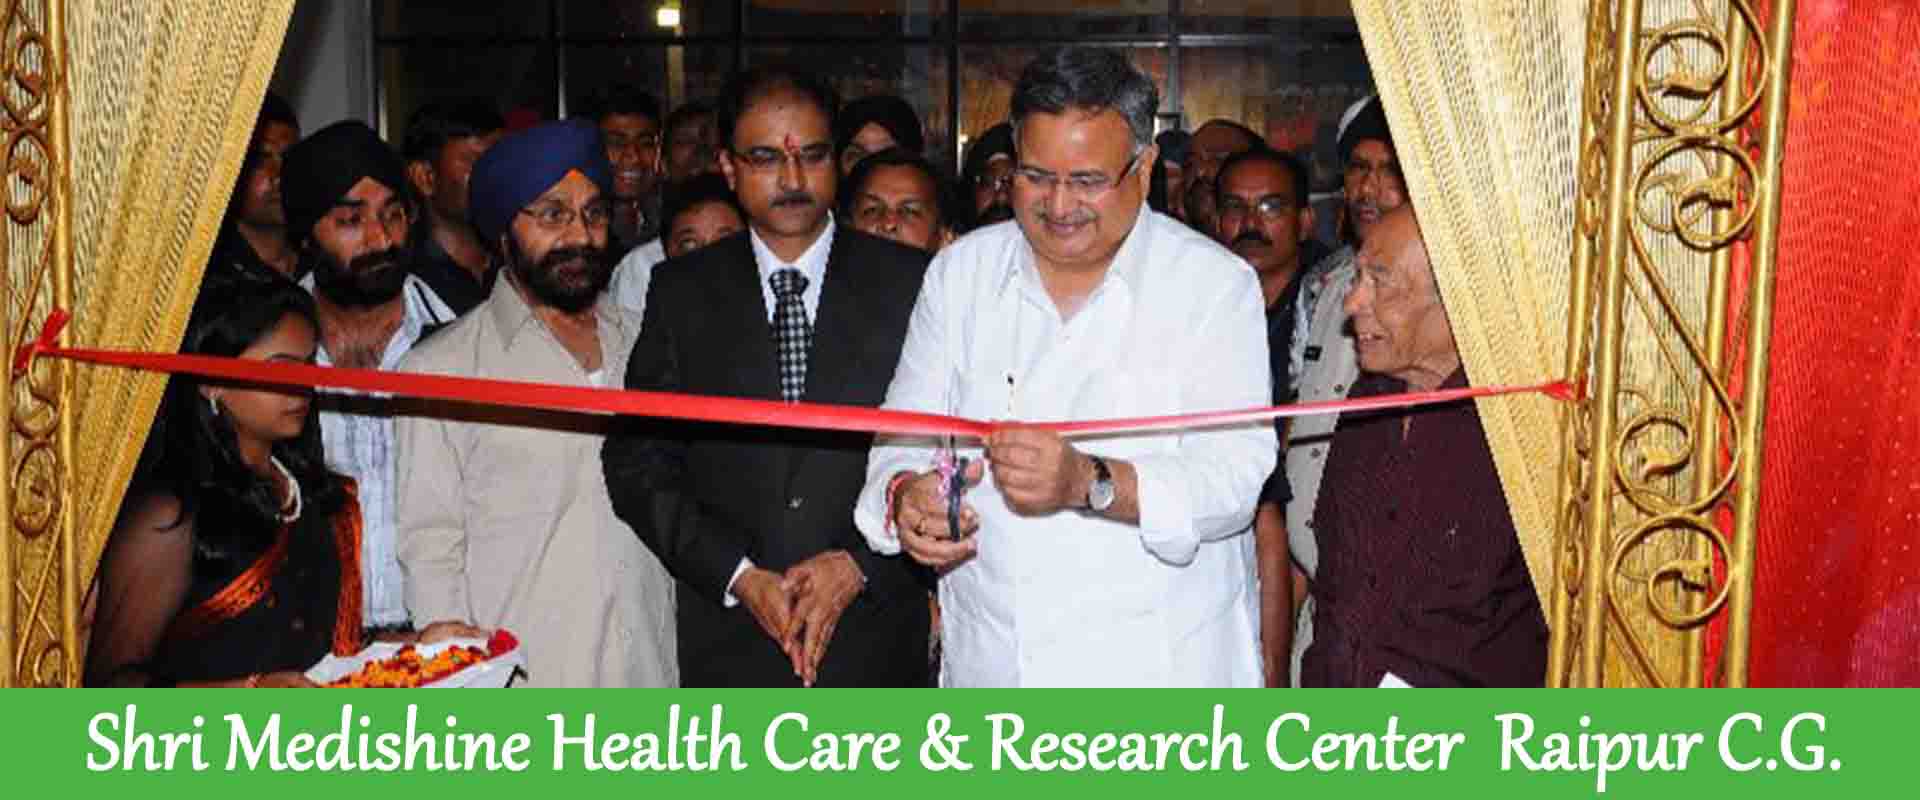 Shri Medishine Health Care and Research Center